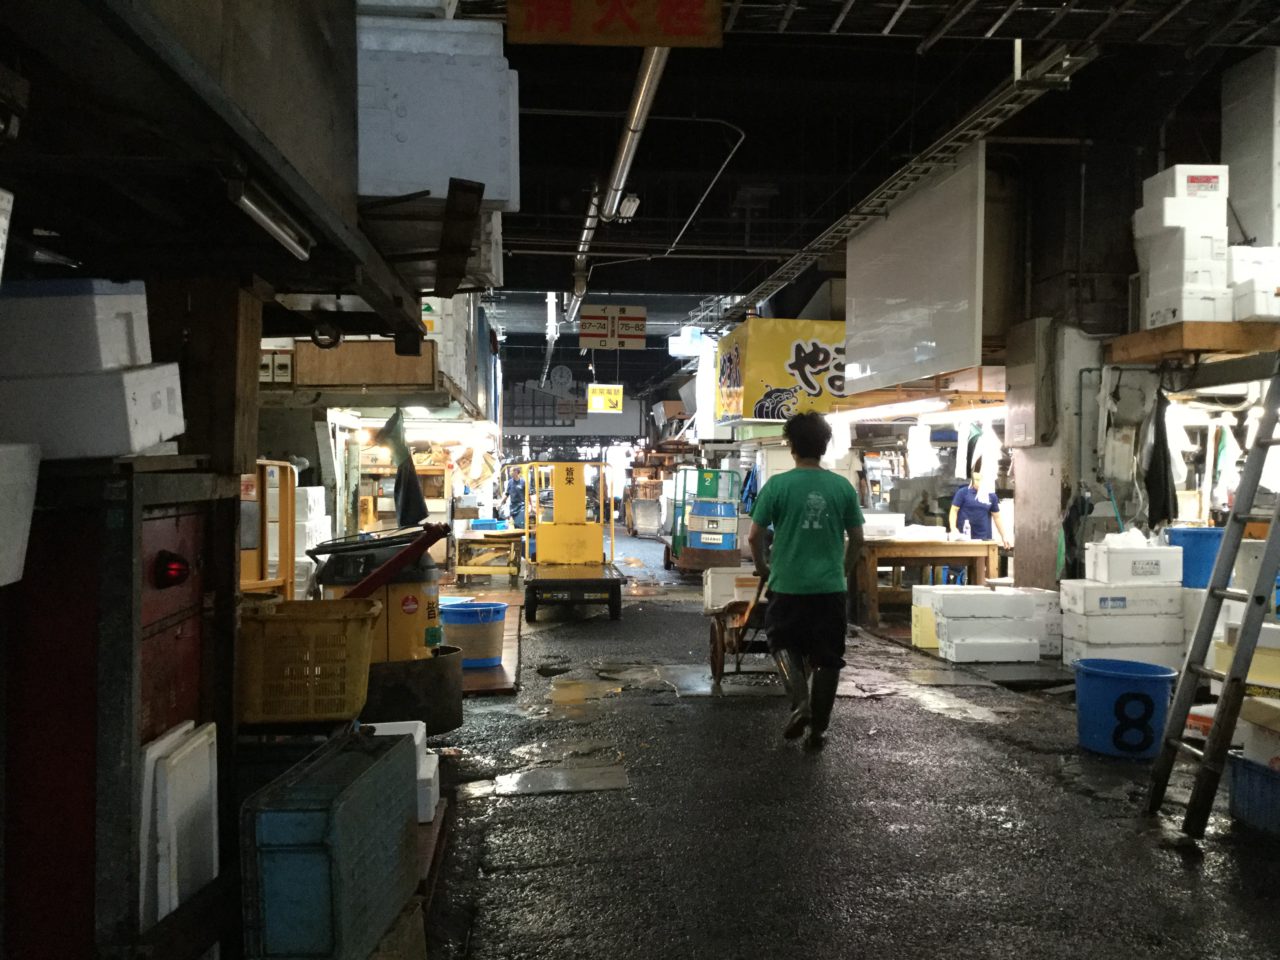 The Tsukiji market